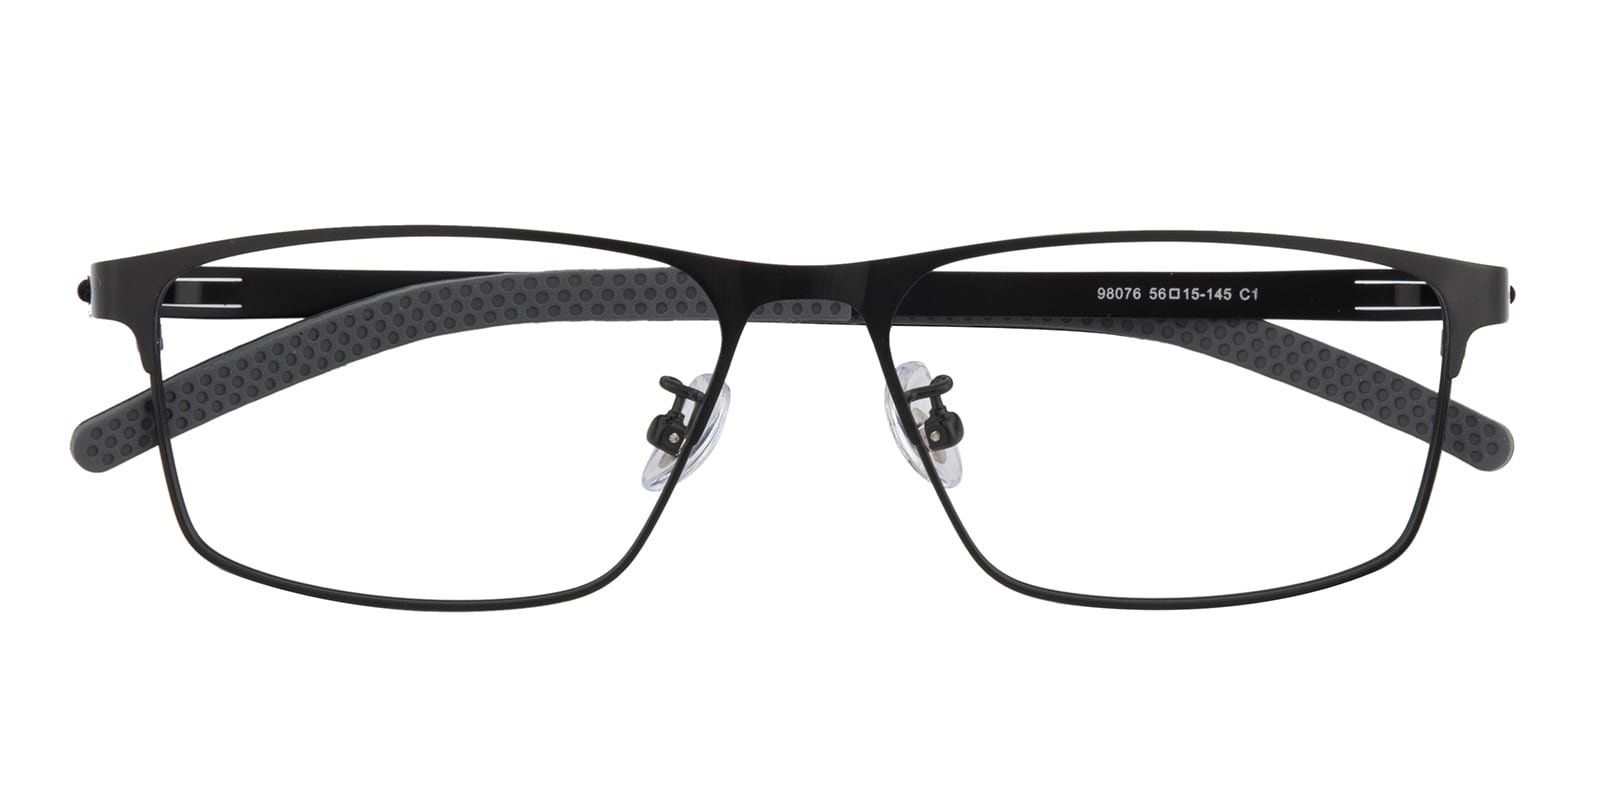 Rectangle Eyeglasses, Full Frame Black/Gray Titanium|Silica-gel - FT0602